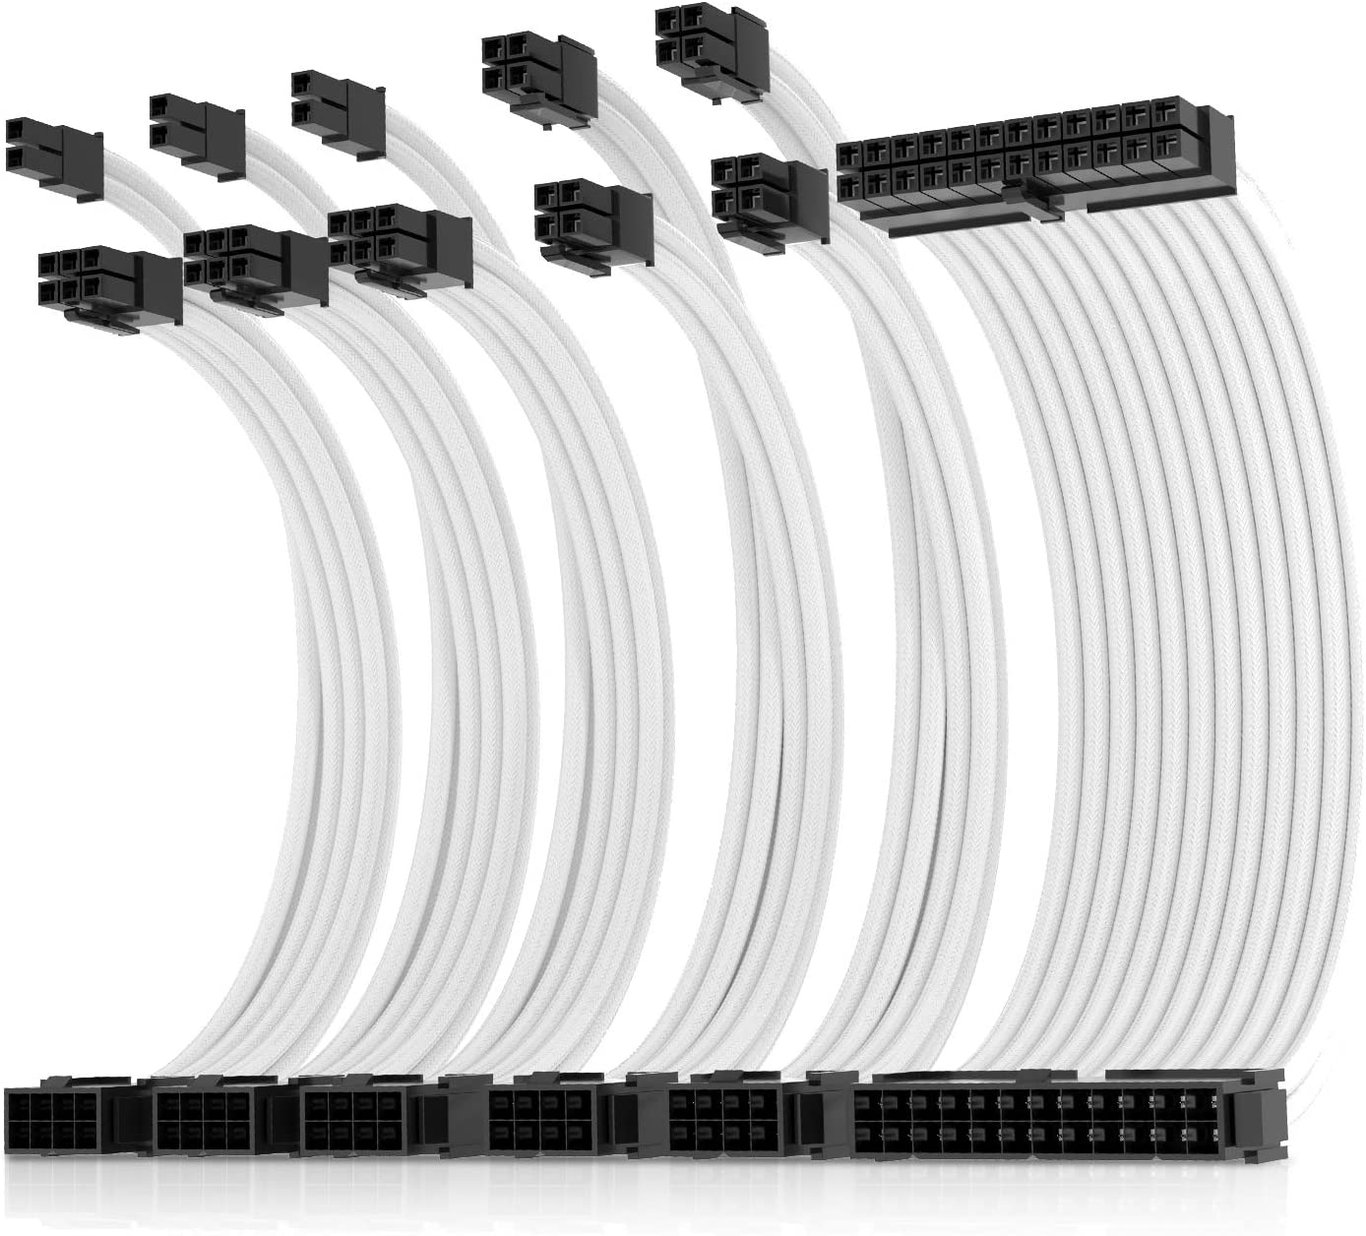 【限時優惠】AsiaHorse Pro-6 Sleeved Extension Cable Kit - 白色